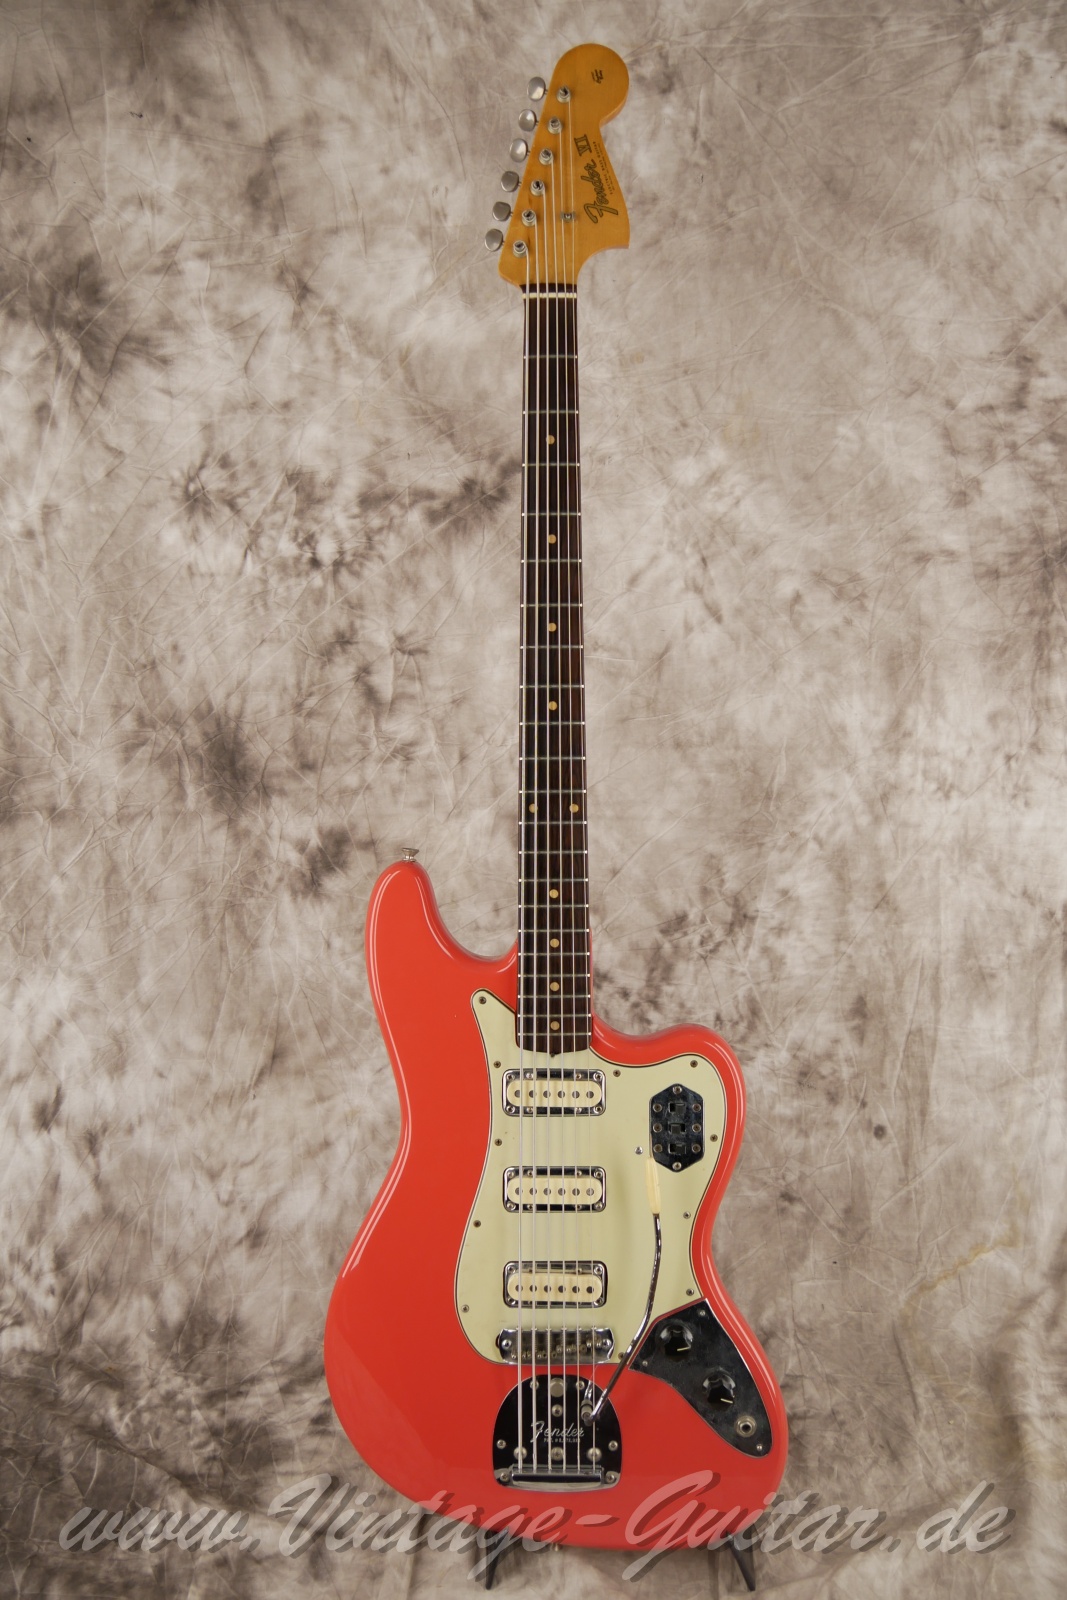 Fender_VI_Bass_Gitarre_Baujahr_1962_fiesta_red_refinished-001.jpg